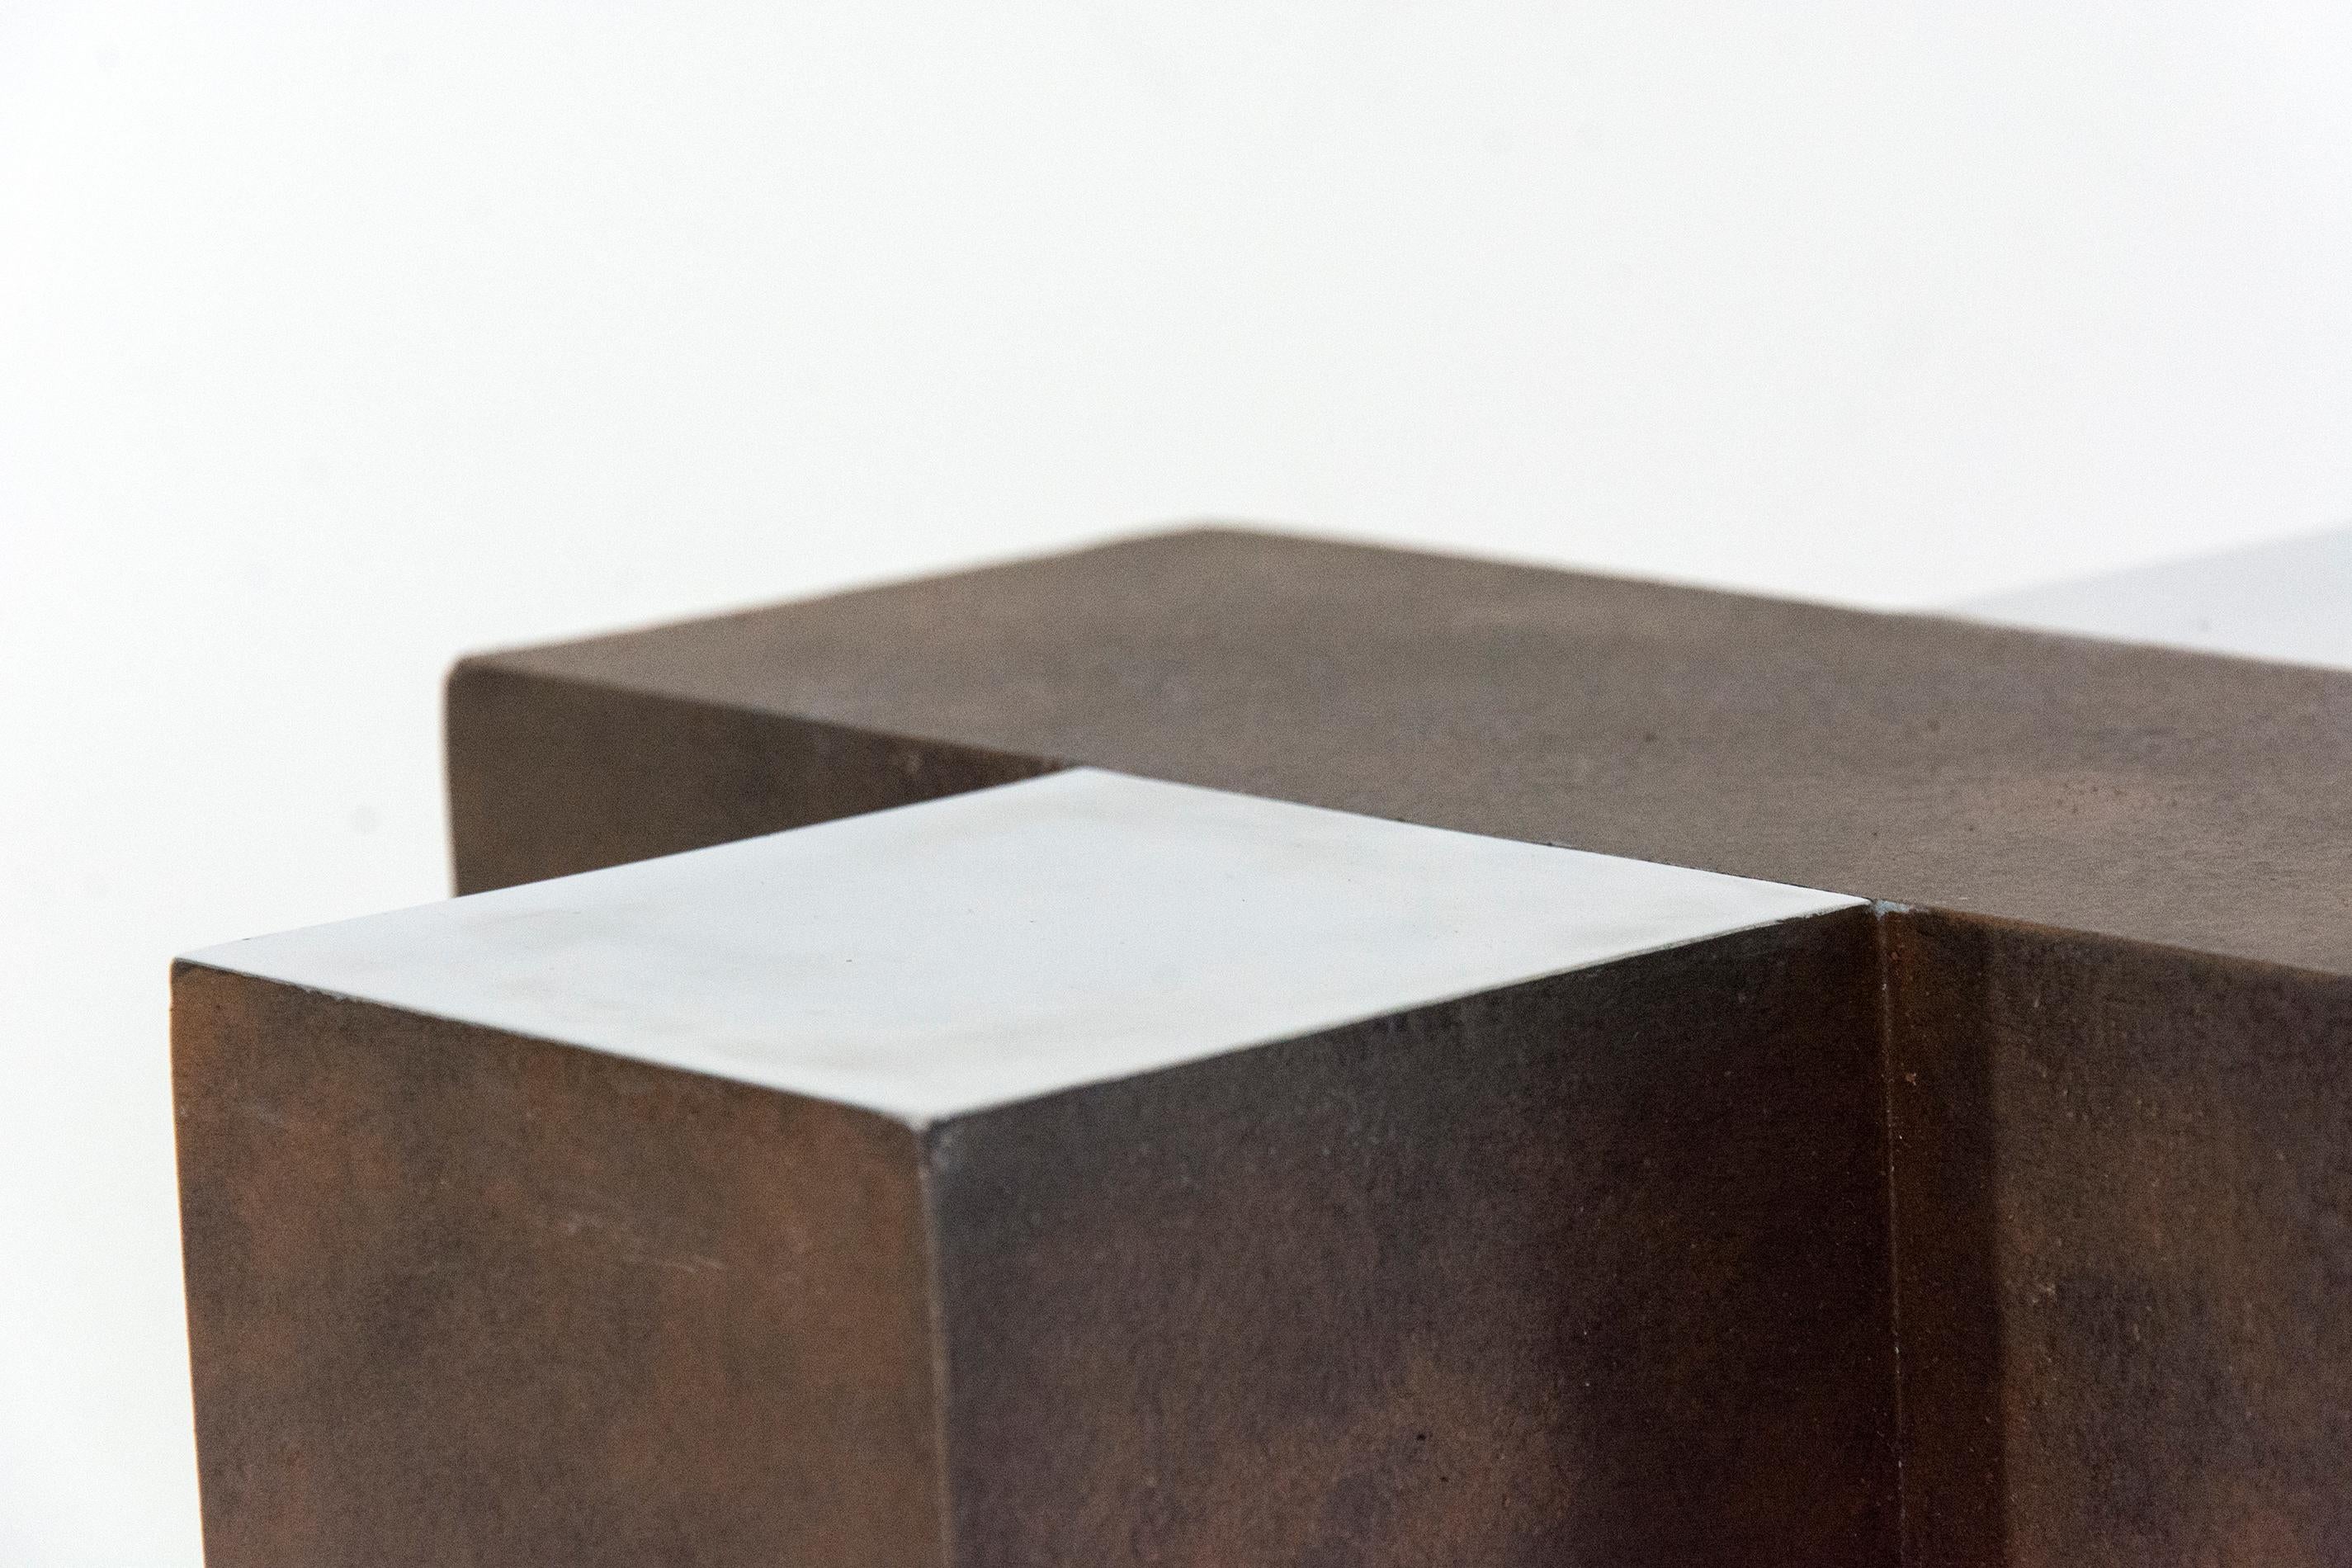 Des géométries entrecroisées dans une patine brun rouille et de l'aluminium poli forment un ensemble dynamique dans cette sculpture moderne de Philippe Pallafray. Cette pièce est le numéro 2 d'une édition de 10 exemplaires. Il est disponible sur